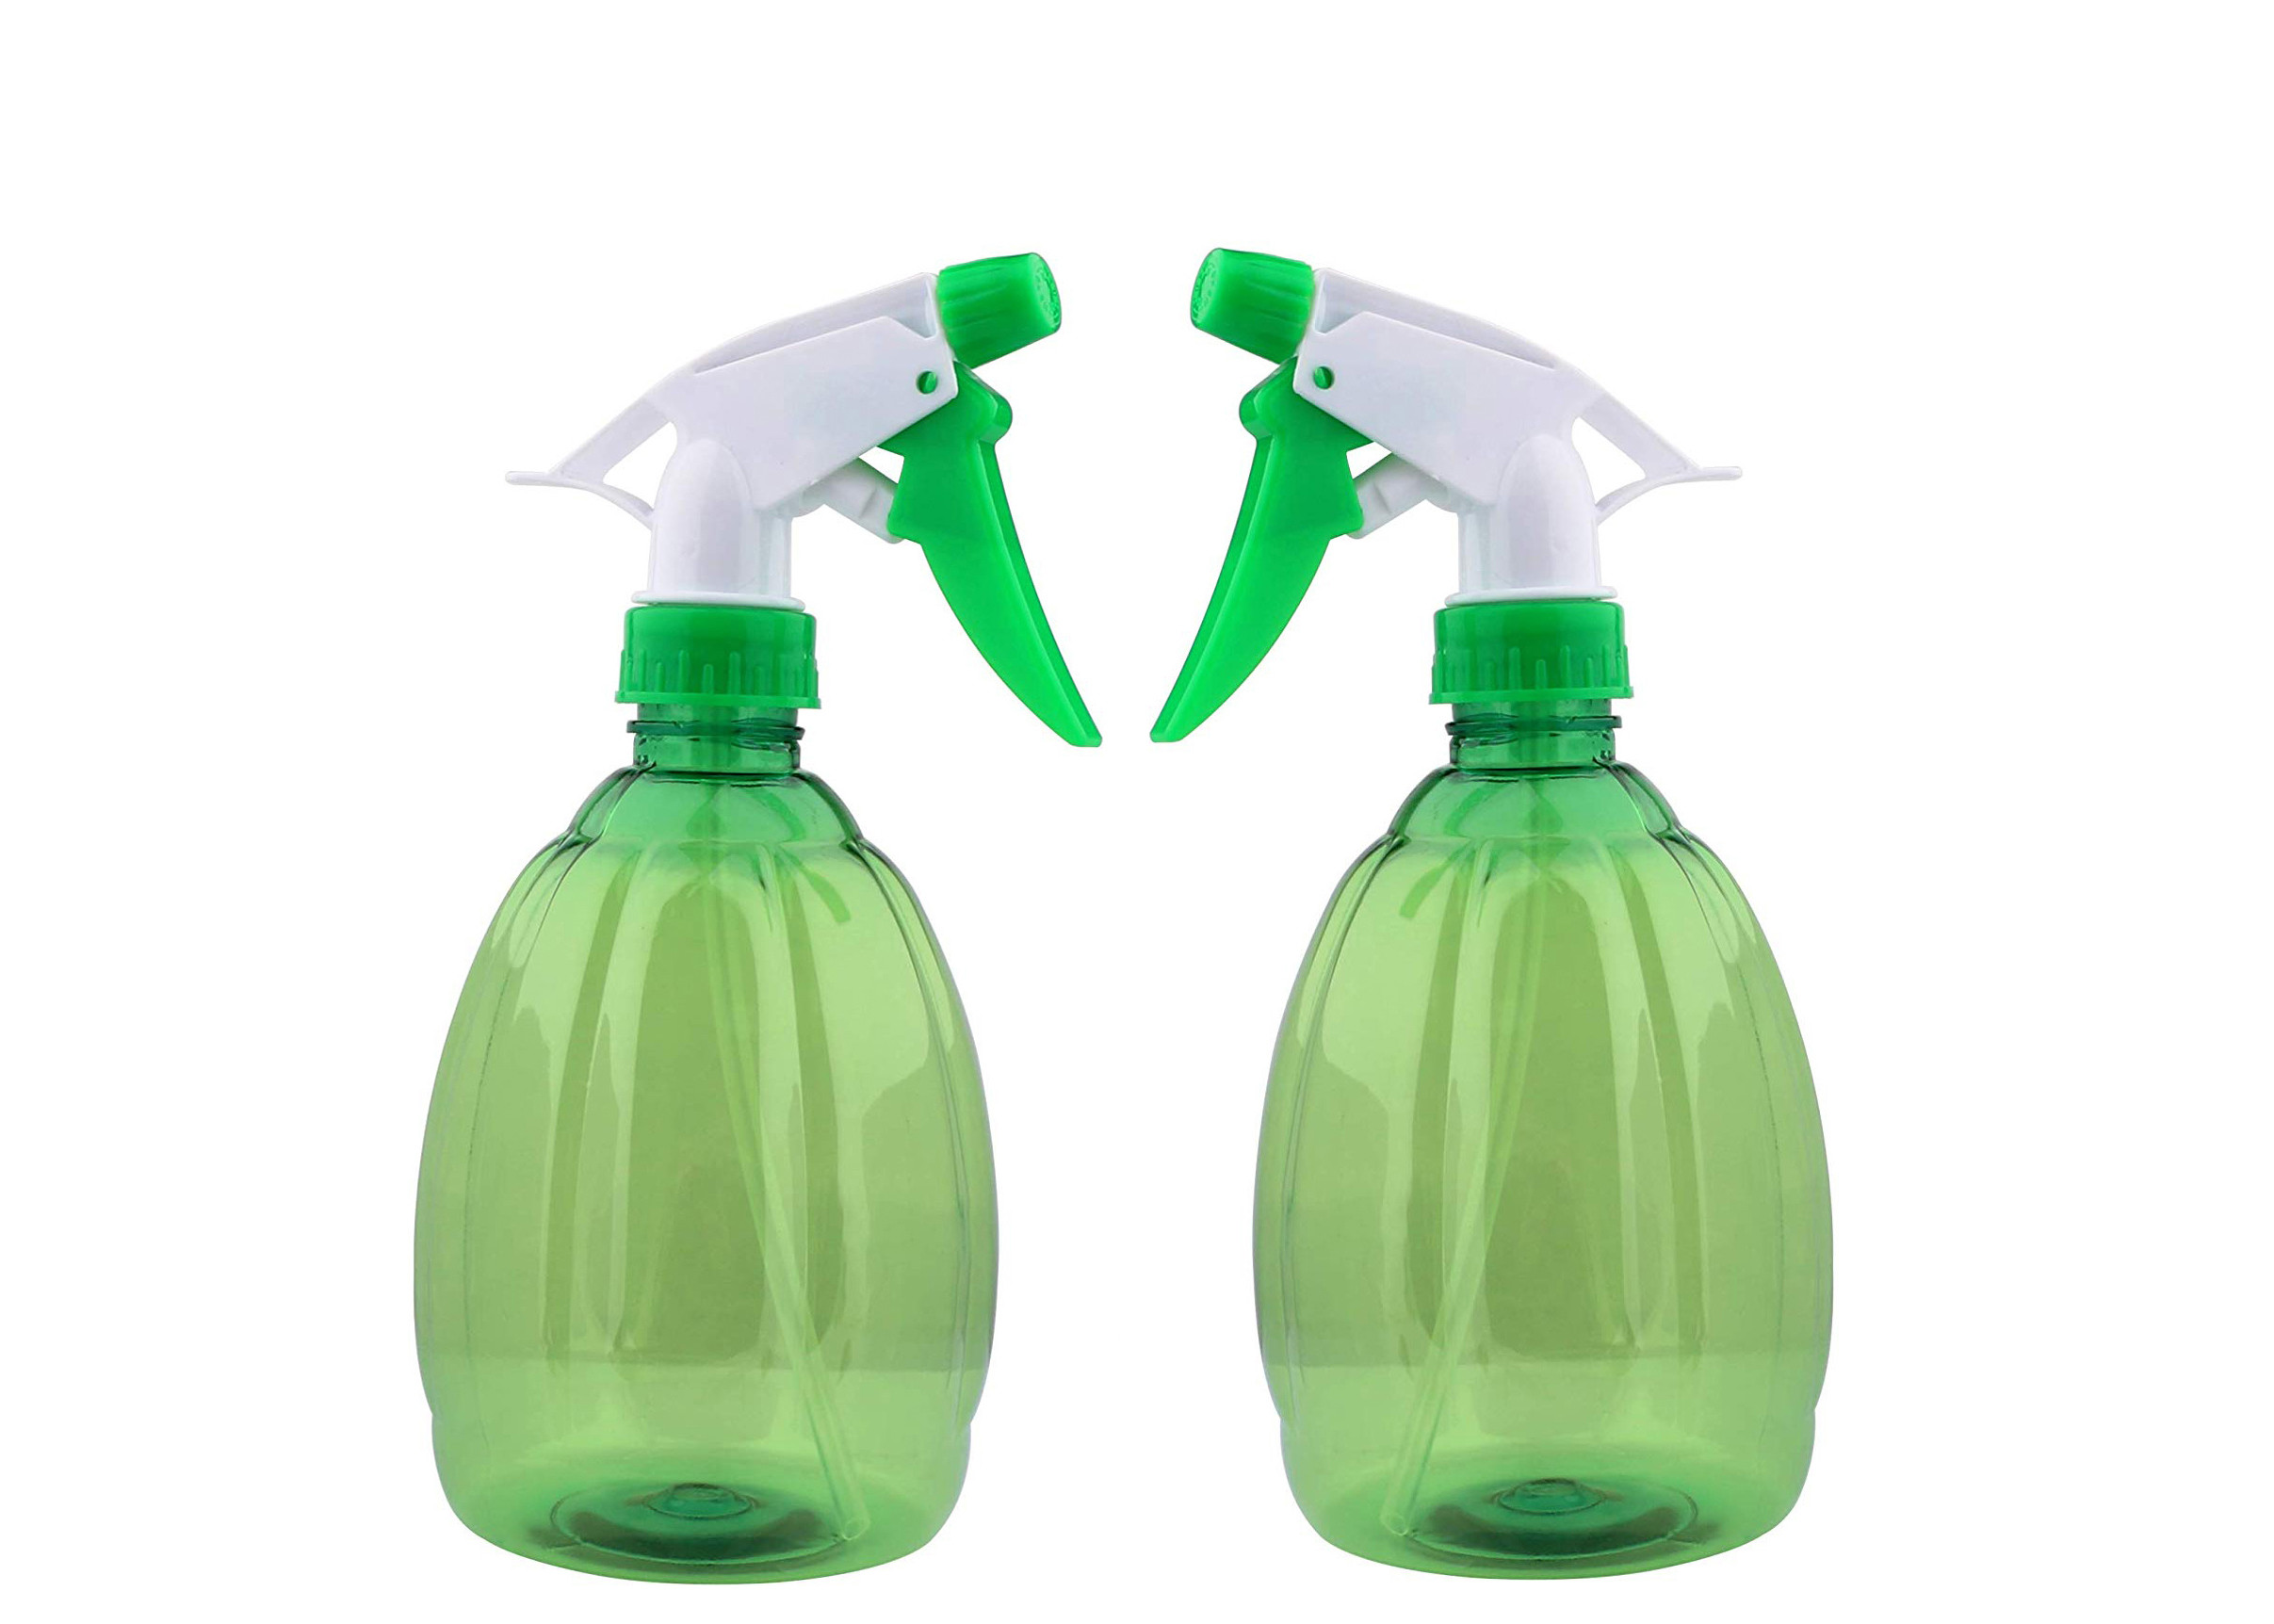 Green Plastic Trigger Spray Bottles  Household Garden  Plant Watering